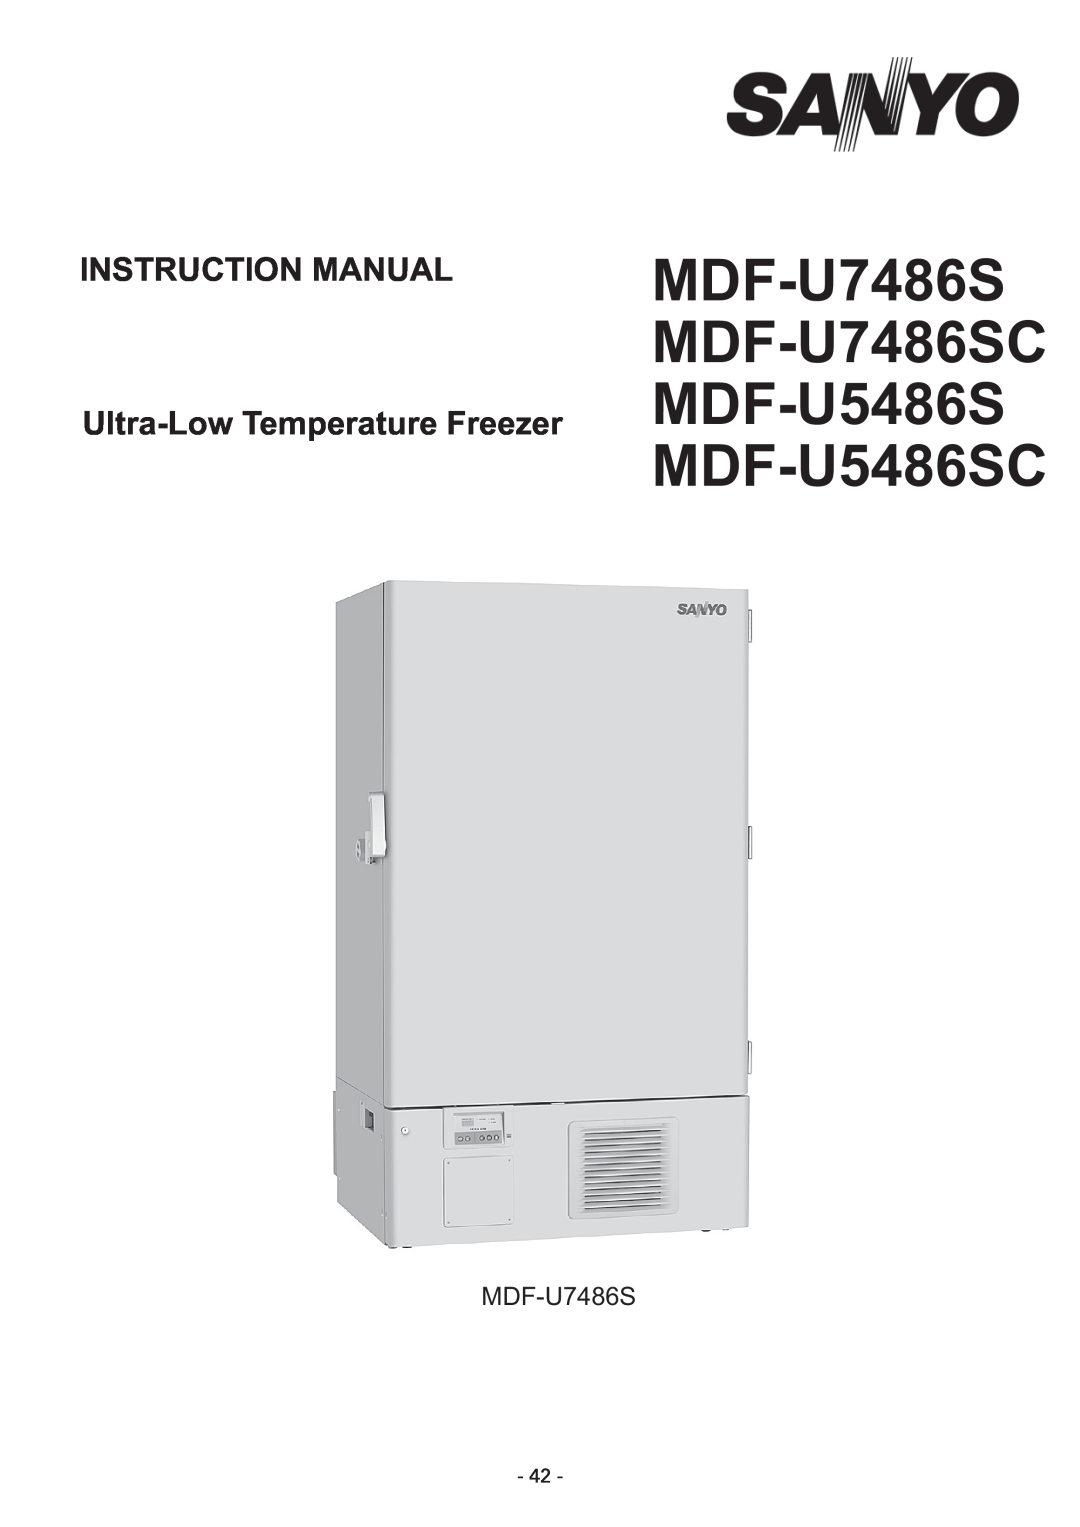 Sanyo instruction manual MDF-U7486S MDF-U7486SC MDF-U5486S MDF-U5486SC 